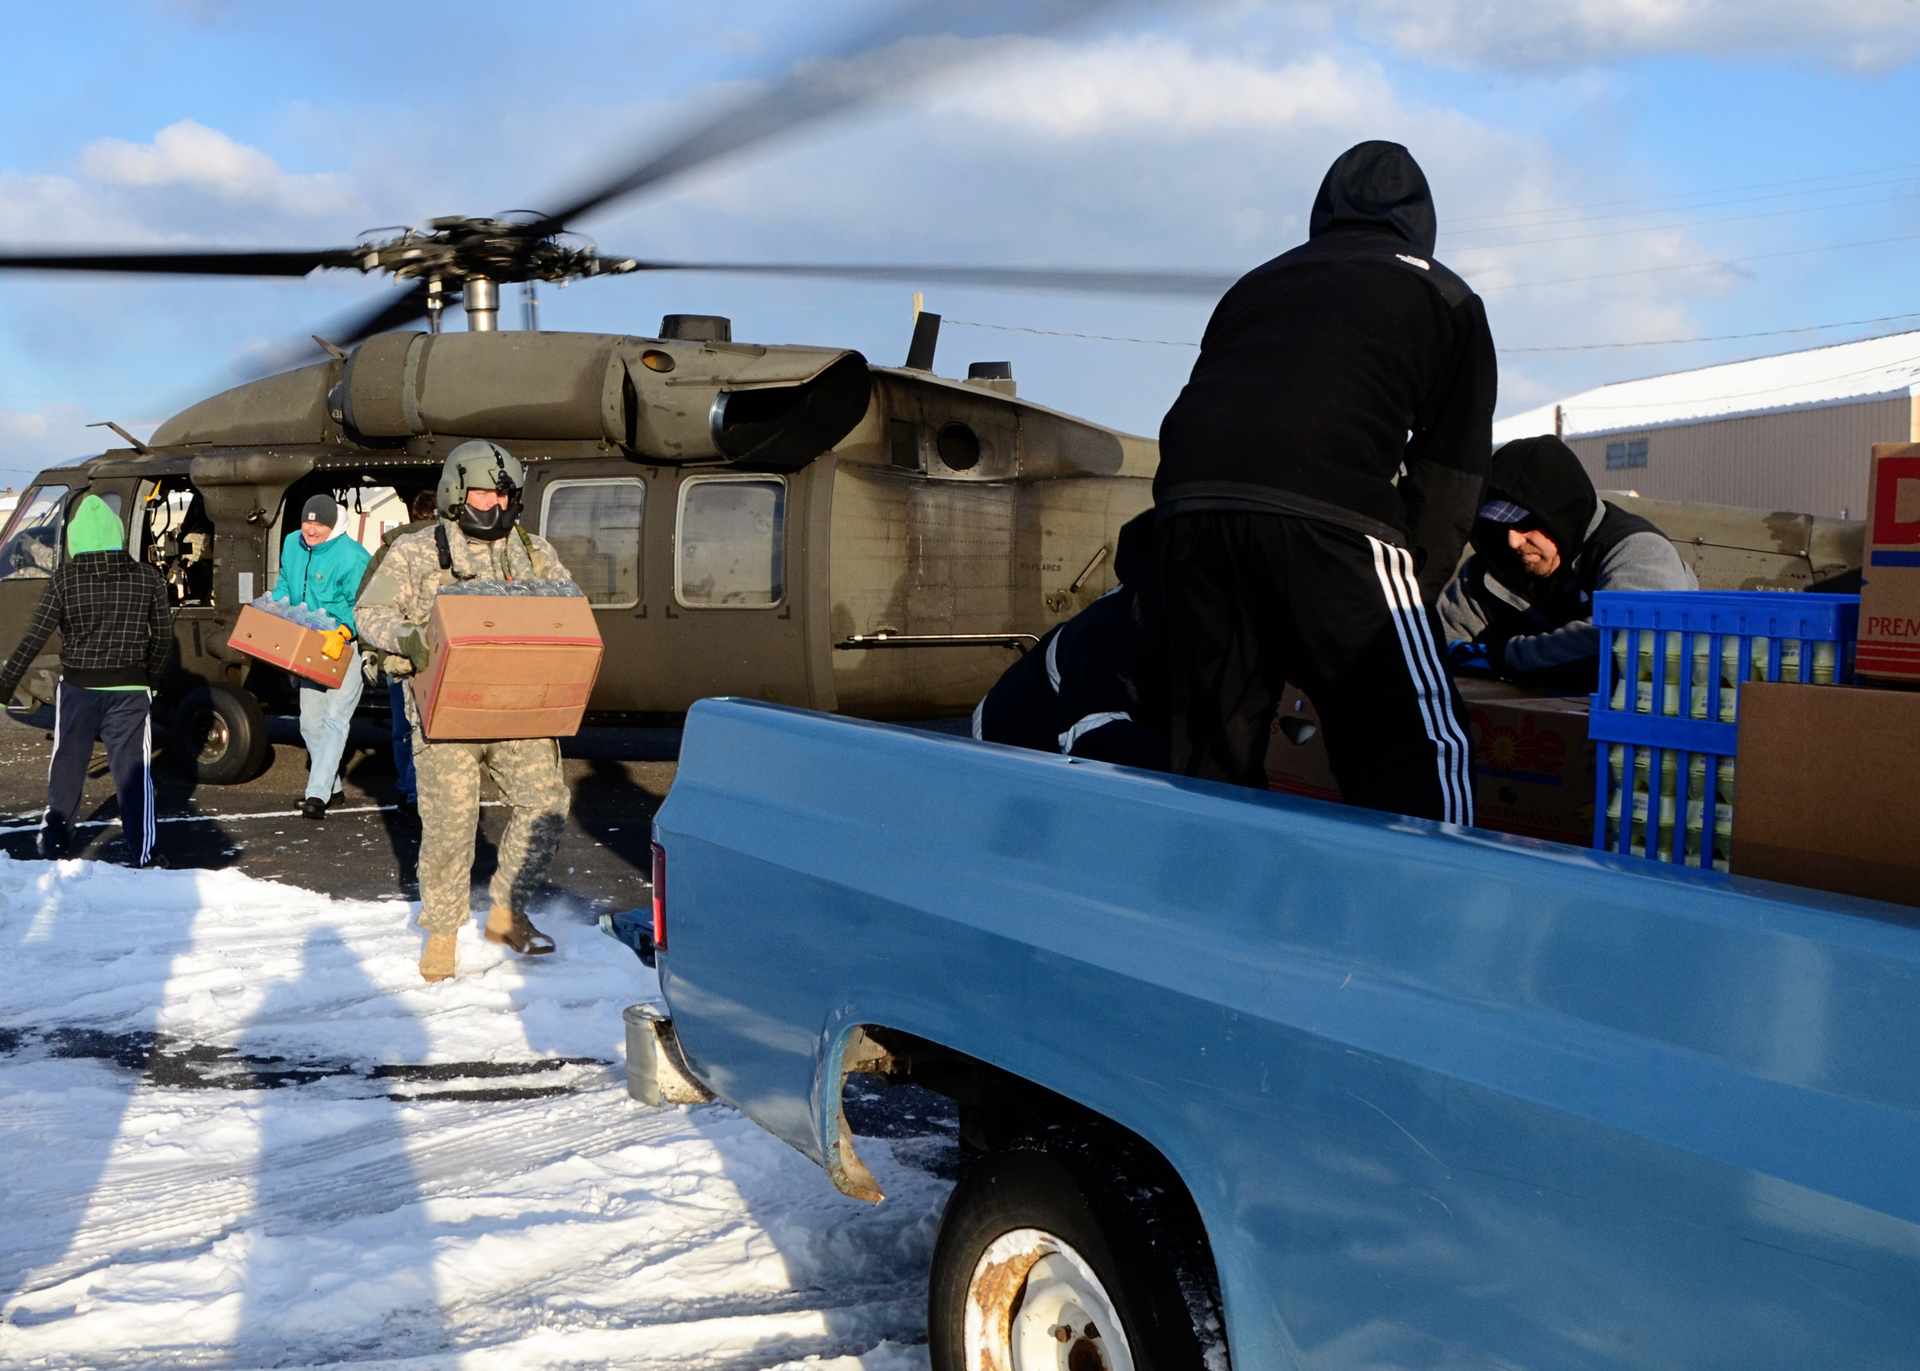 Żołnierz i cywile przenoszą kartony z żywnością ze śmigłowca na półciężarówkę.